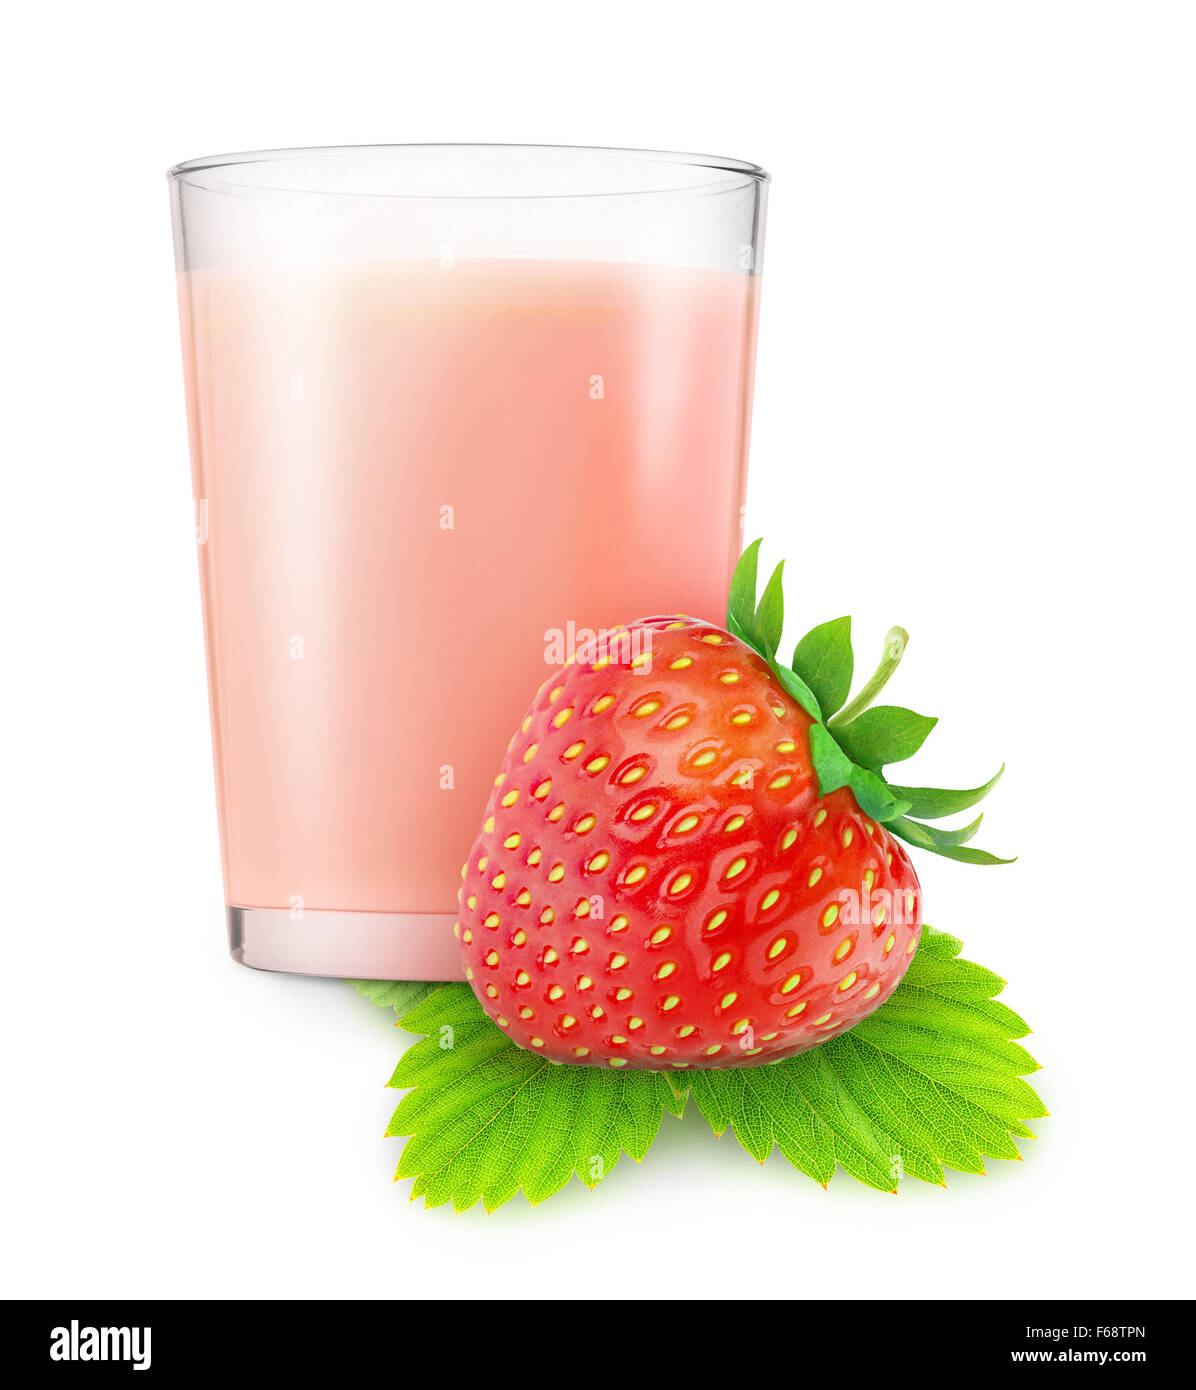 Verre de lait fouetté aux fraises isolé sur fond blanc avec clipping path Banque D'Images